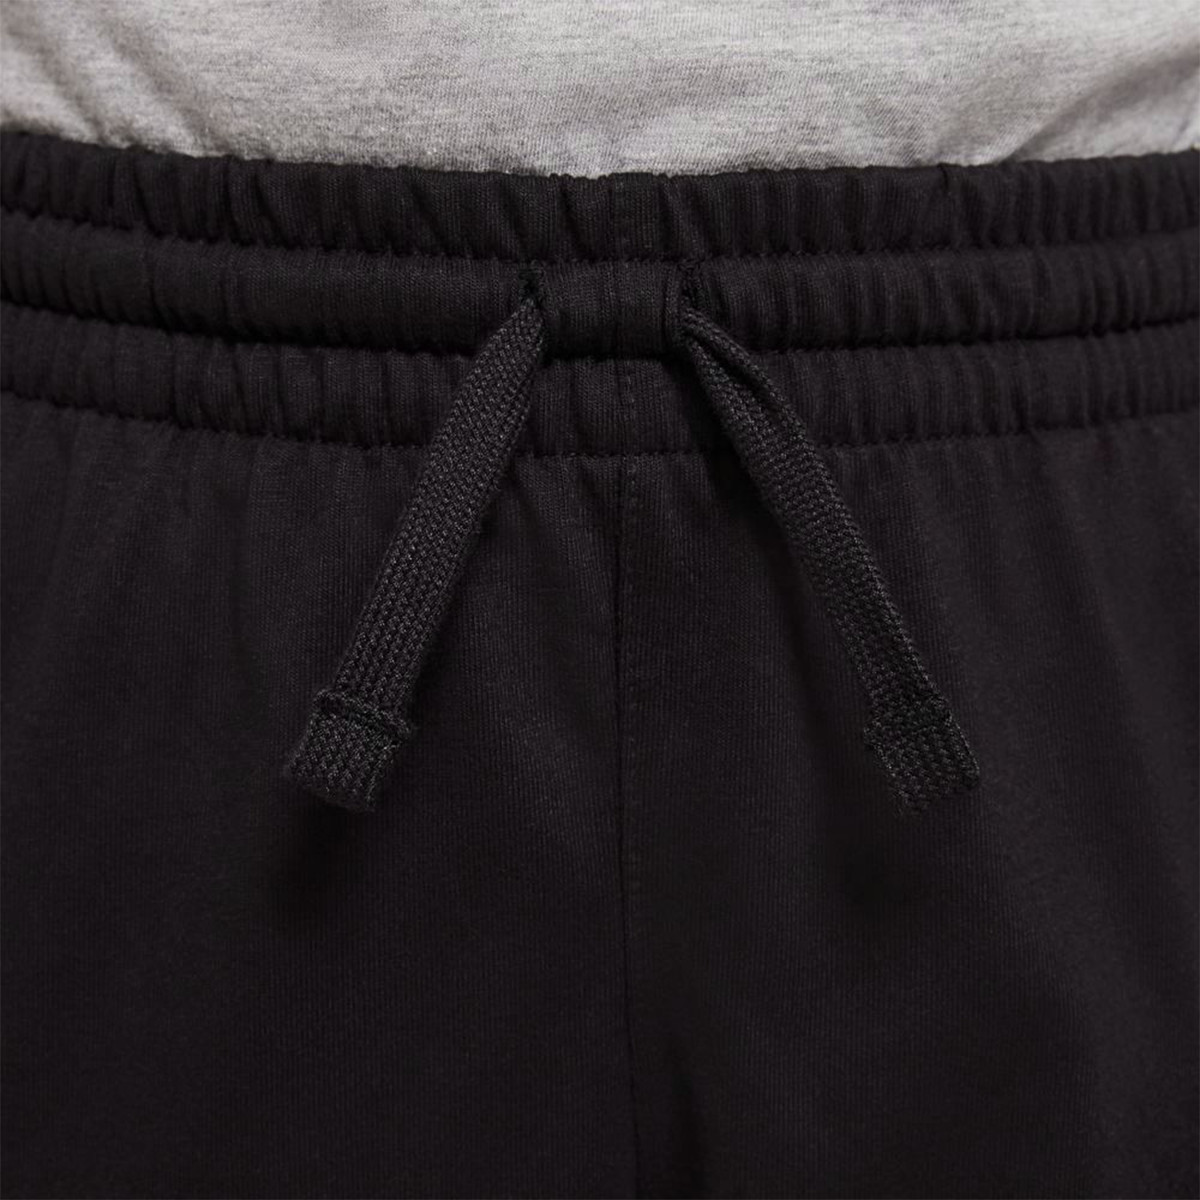 Nike Pantallona të shkurtra Jersey 